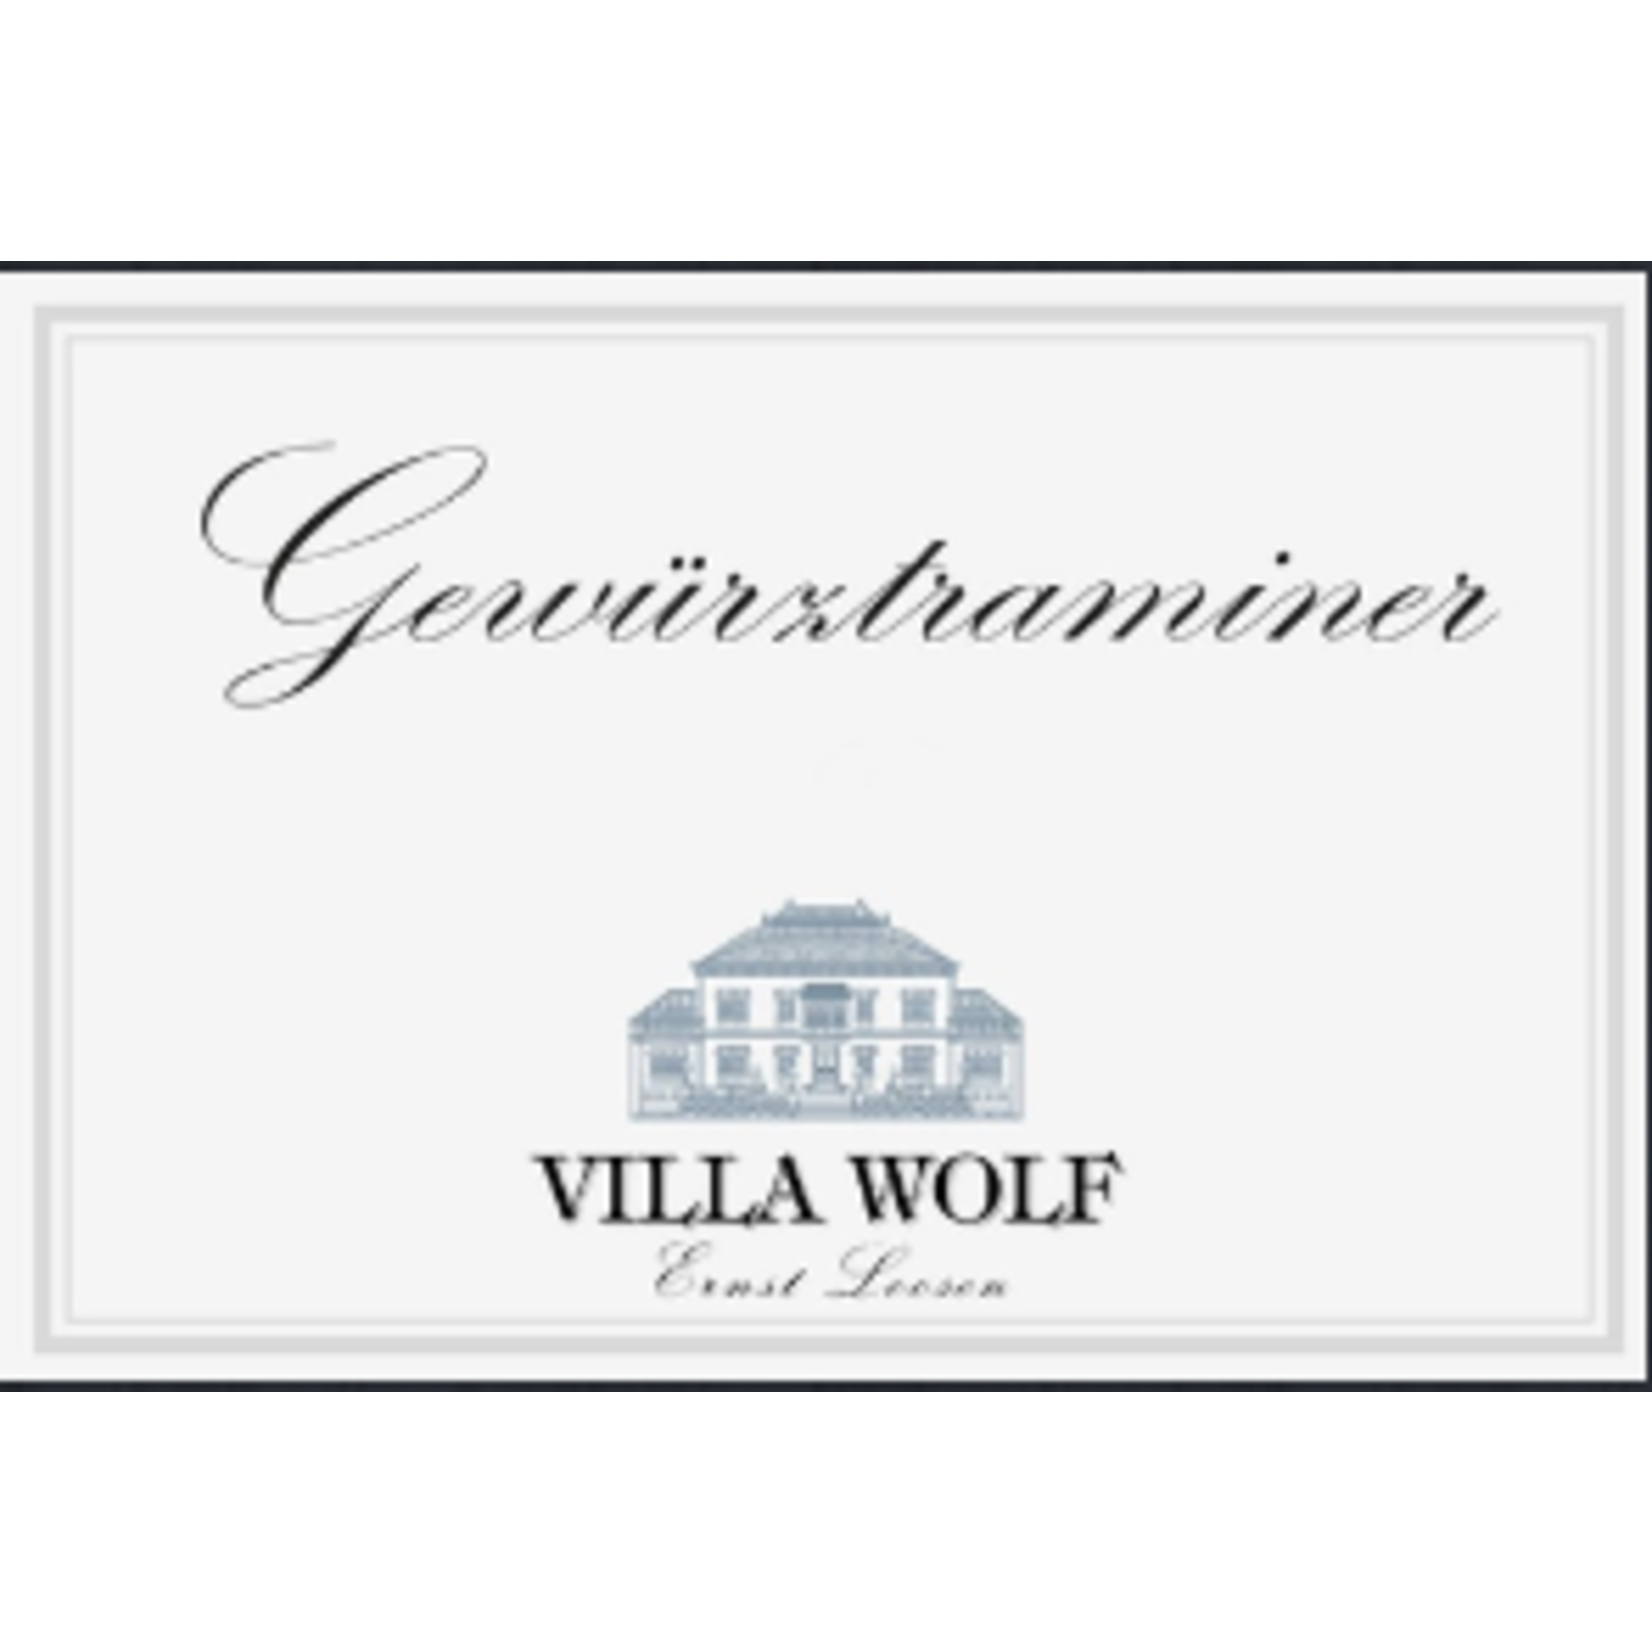 Villa Wolf Villa Wolf Gewurztraminer 2021 Pfalz, Germany